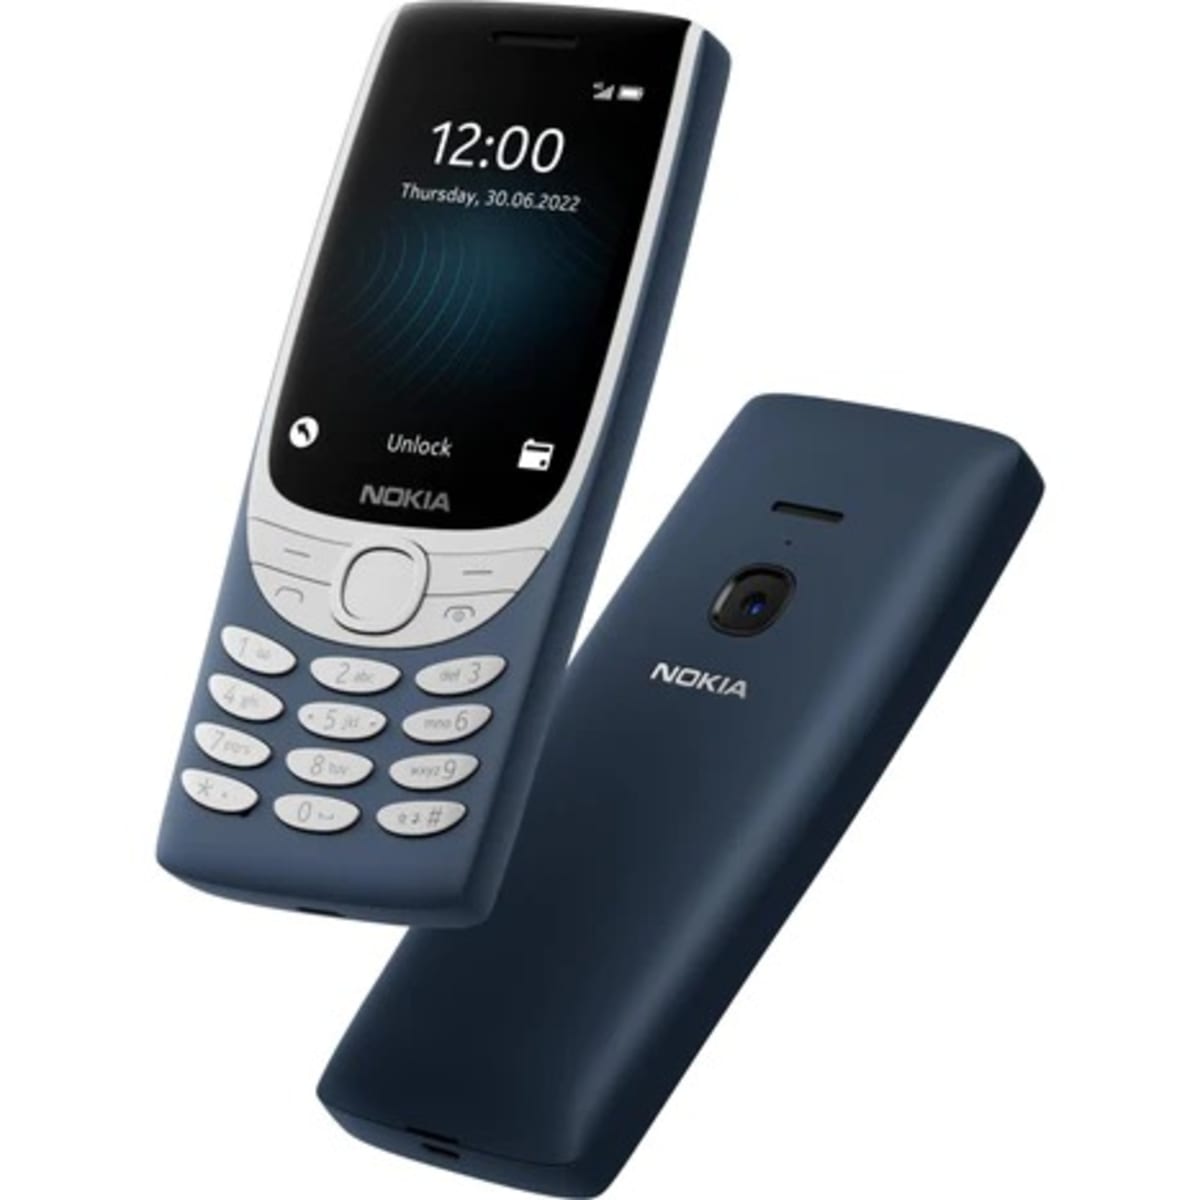 Nokia 8210 4G - Dual SIM - 2.8 - 1450mAh - Blue